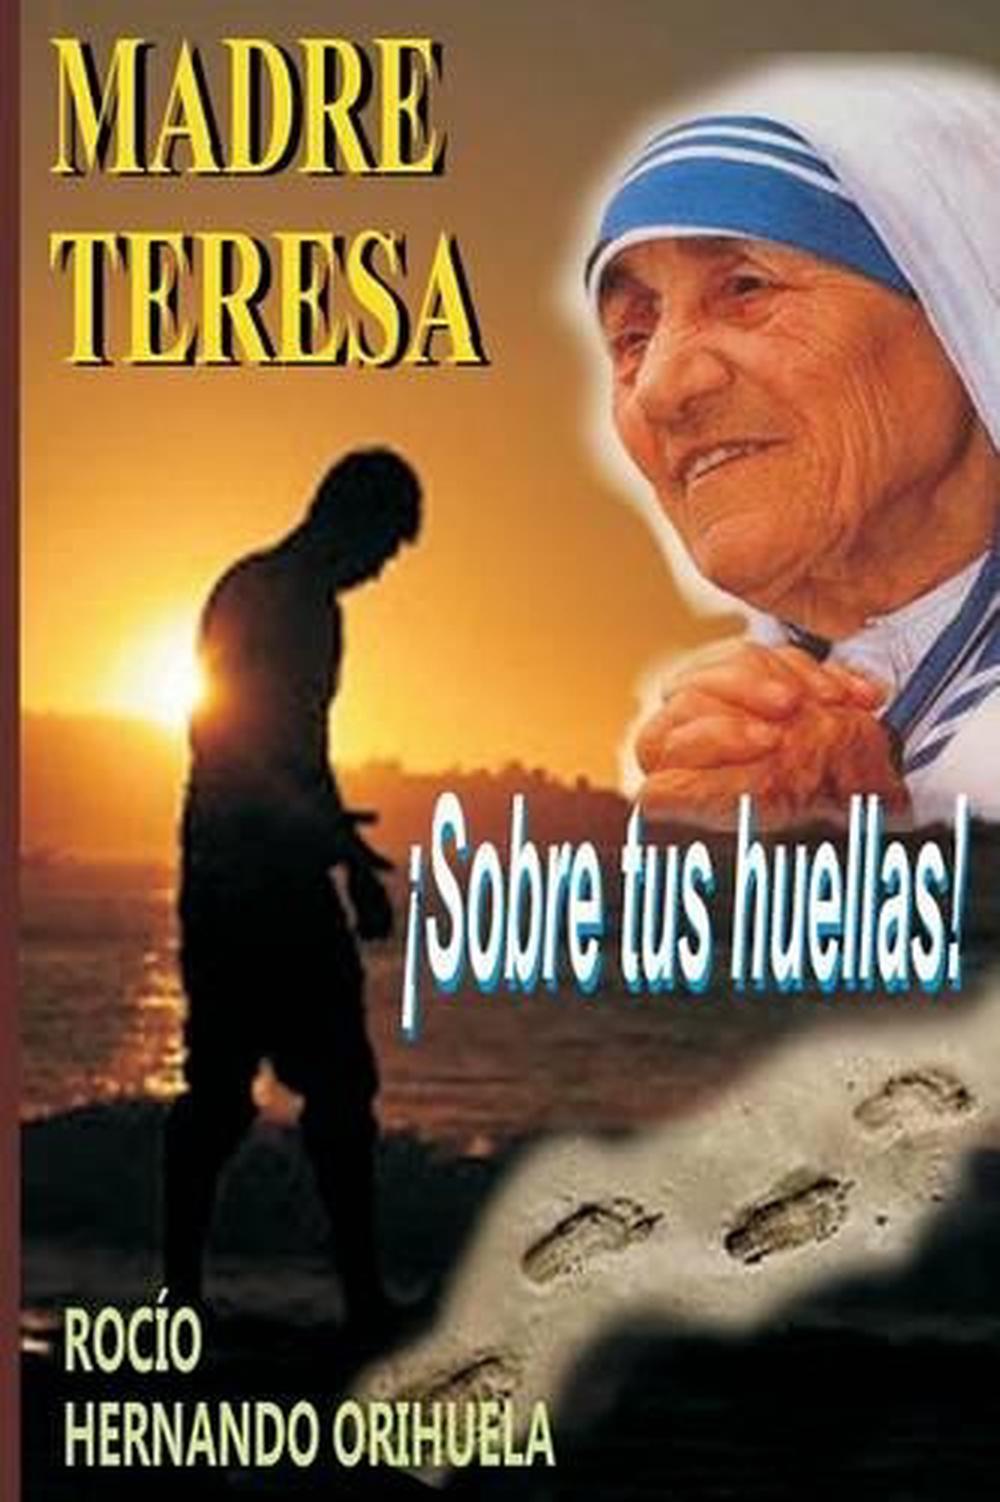 Madre Teresa Sobre Tus Huellas By Rocio Hernando Orihuela Spanish